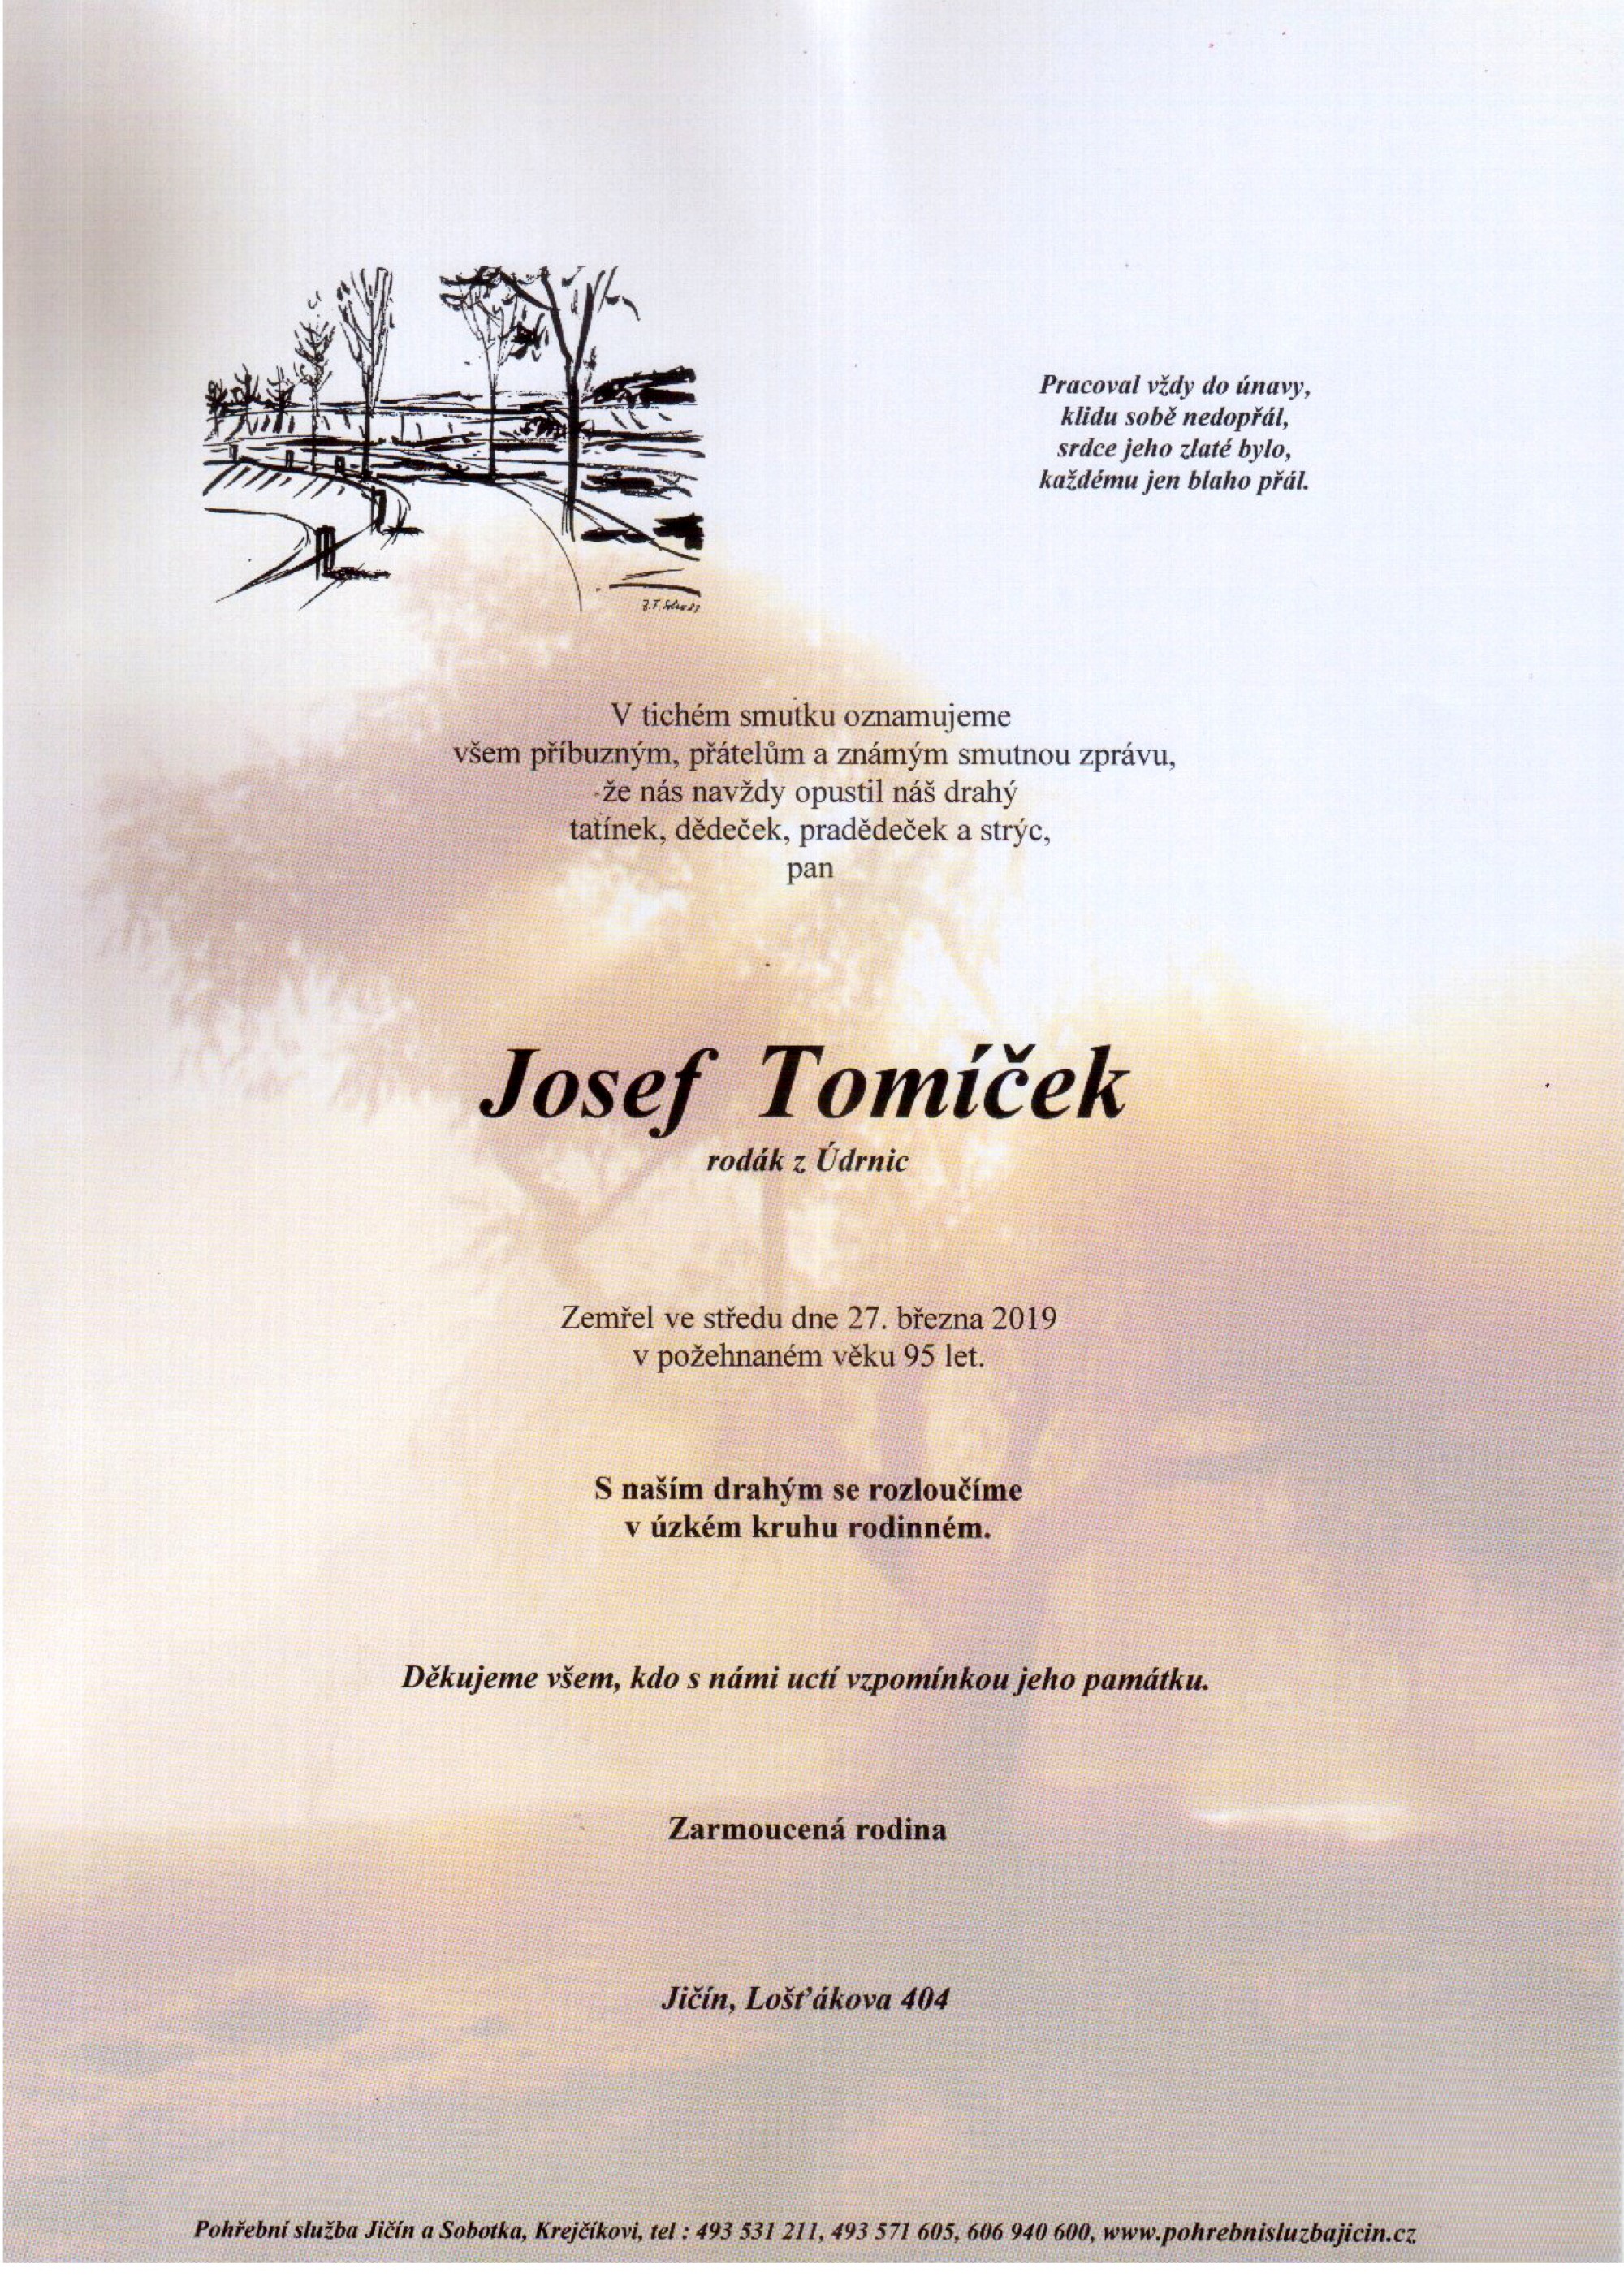 Josef Tomíček